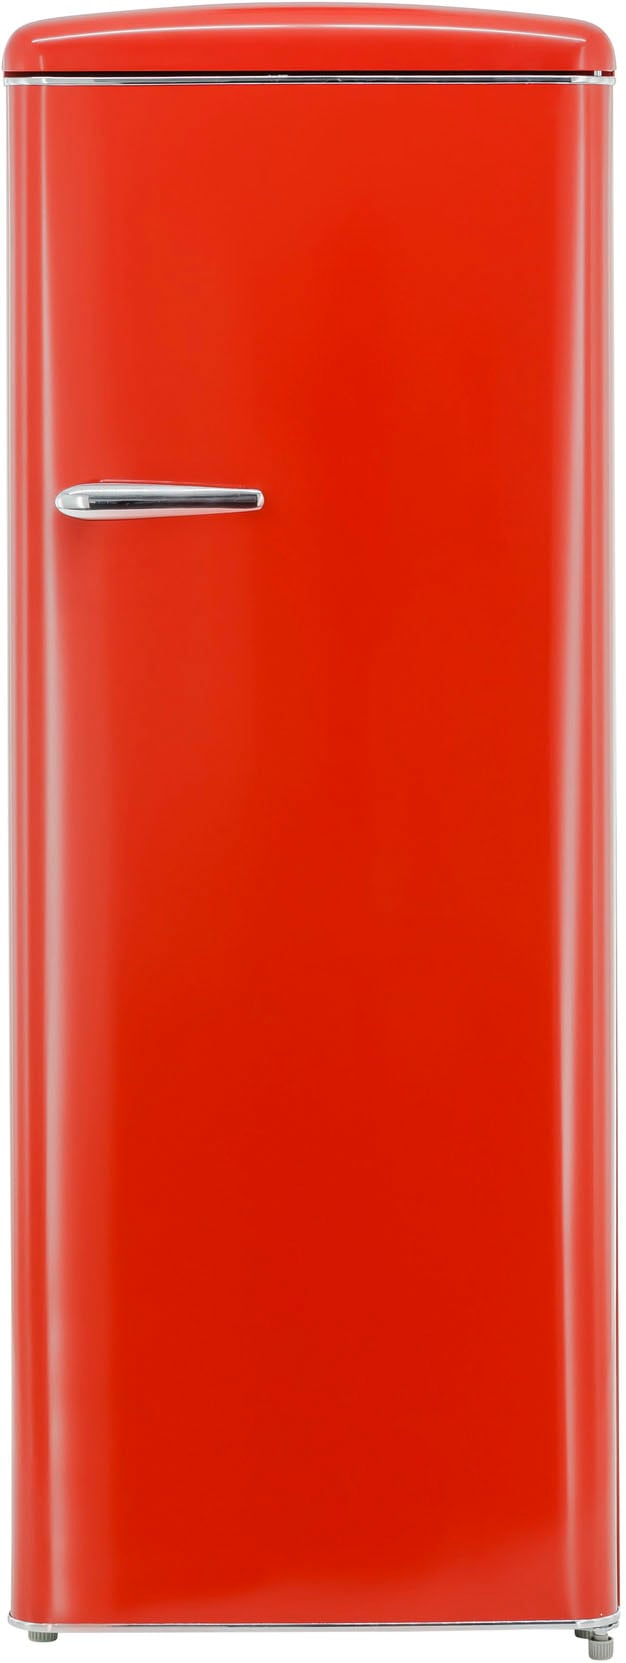 exquisit Kühlschrank »RKS325-V-H-160F«, RKS325-V-H-160F rot, 144 cm hoch, 55 cm breit, 229 L Volumen